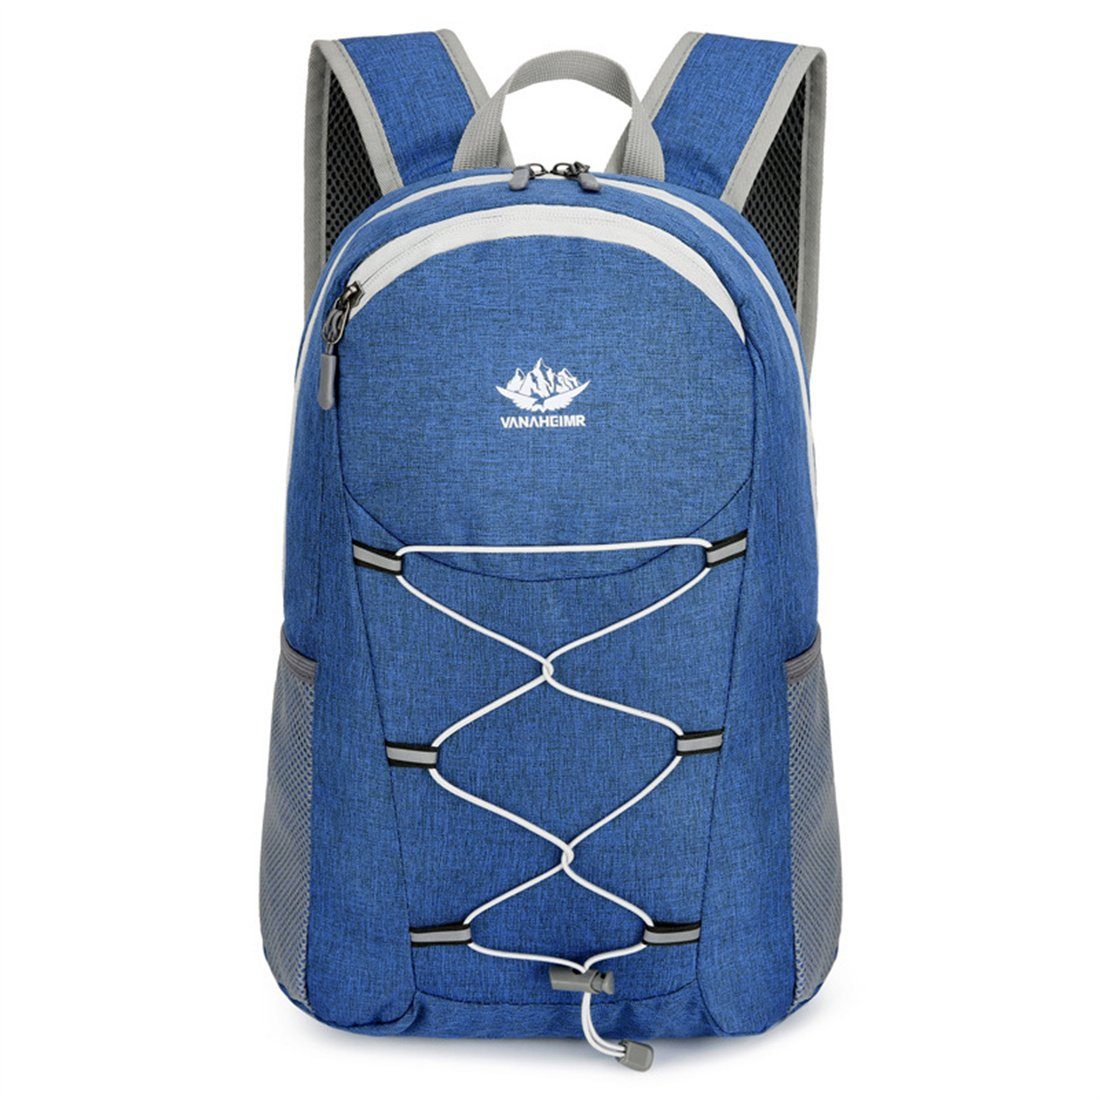 HNDSG Wanderrucksack Faltbare Wandertasche, tragbarer Seesack für Wanderungen im Freien blau